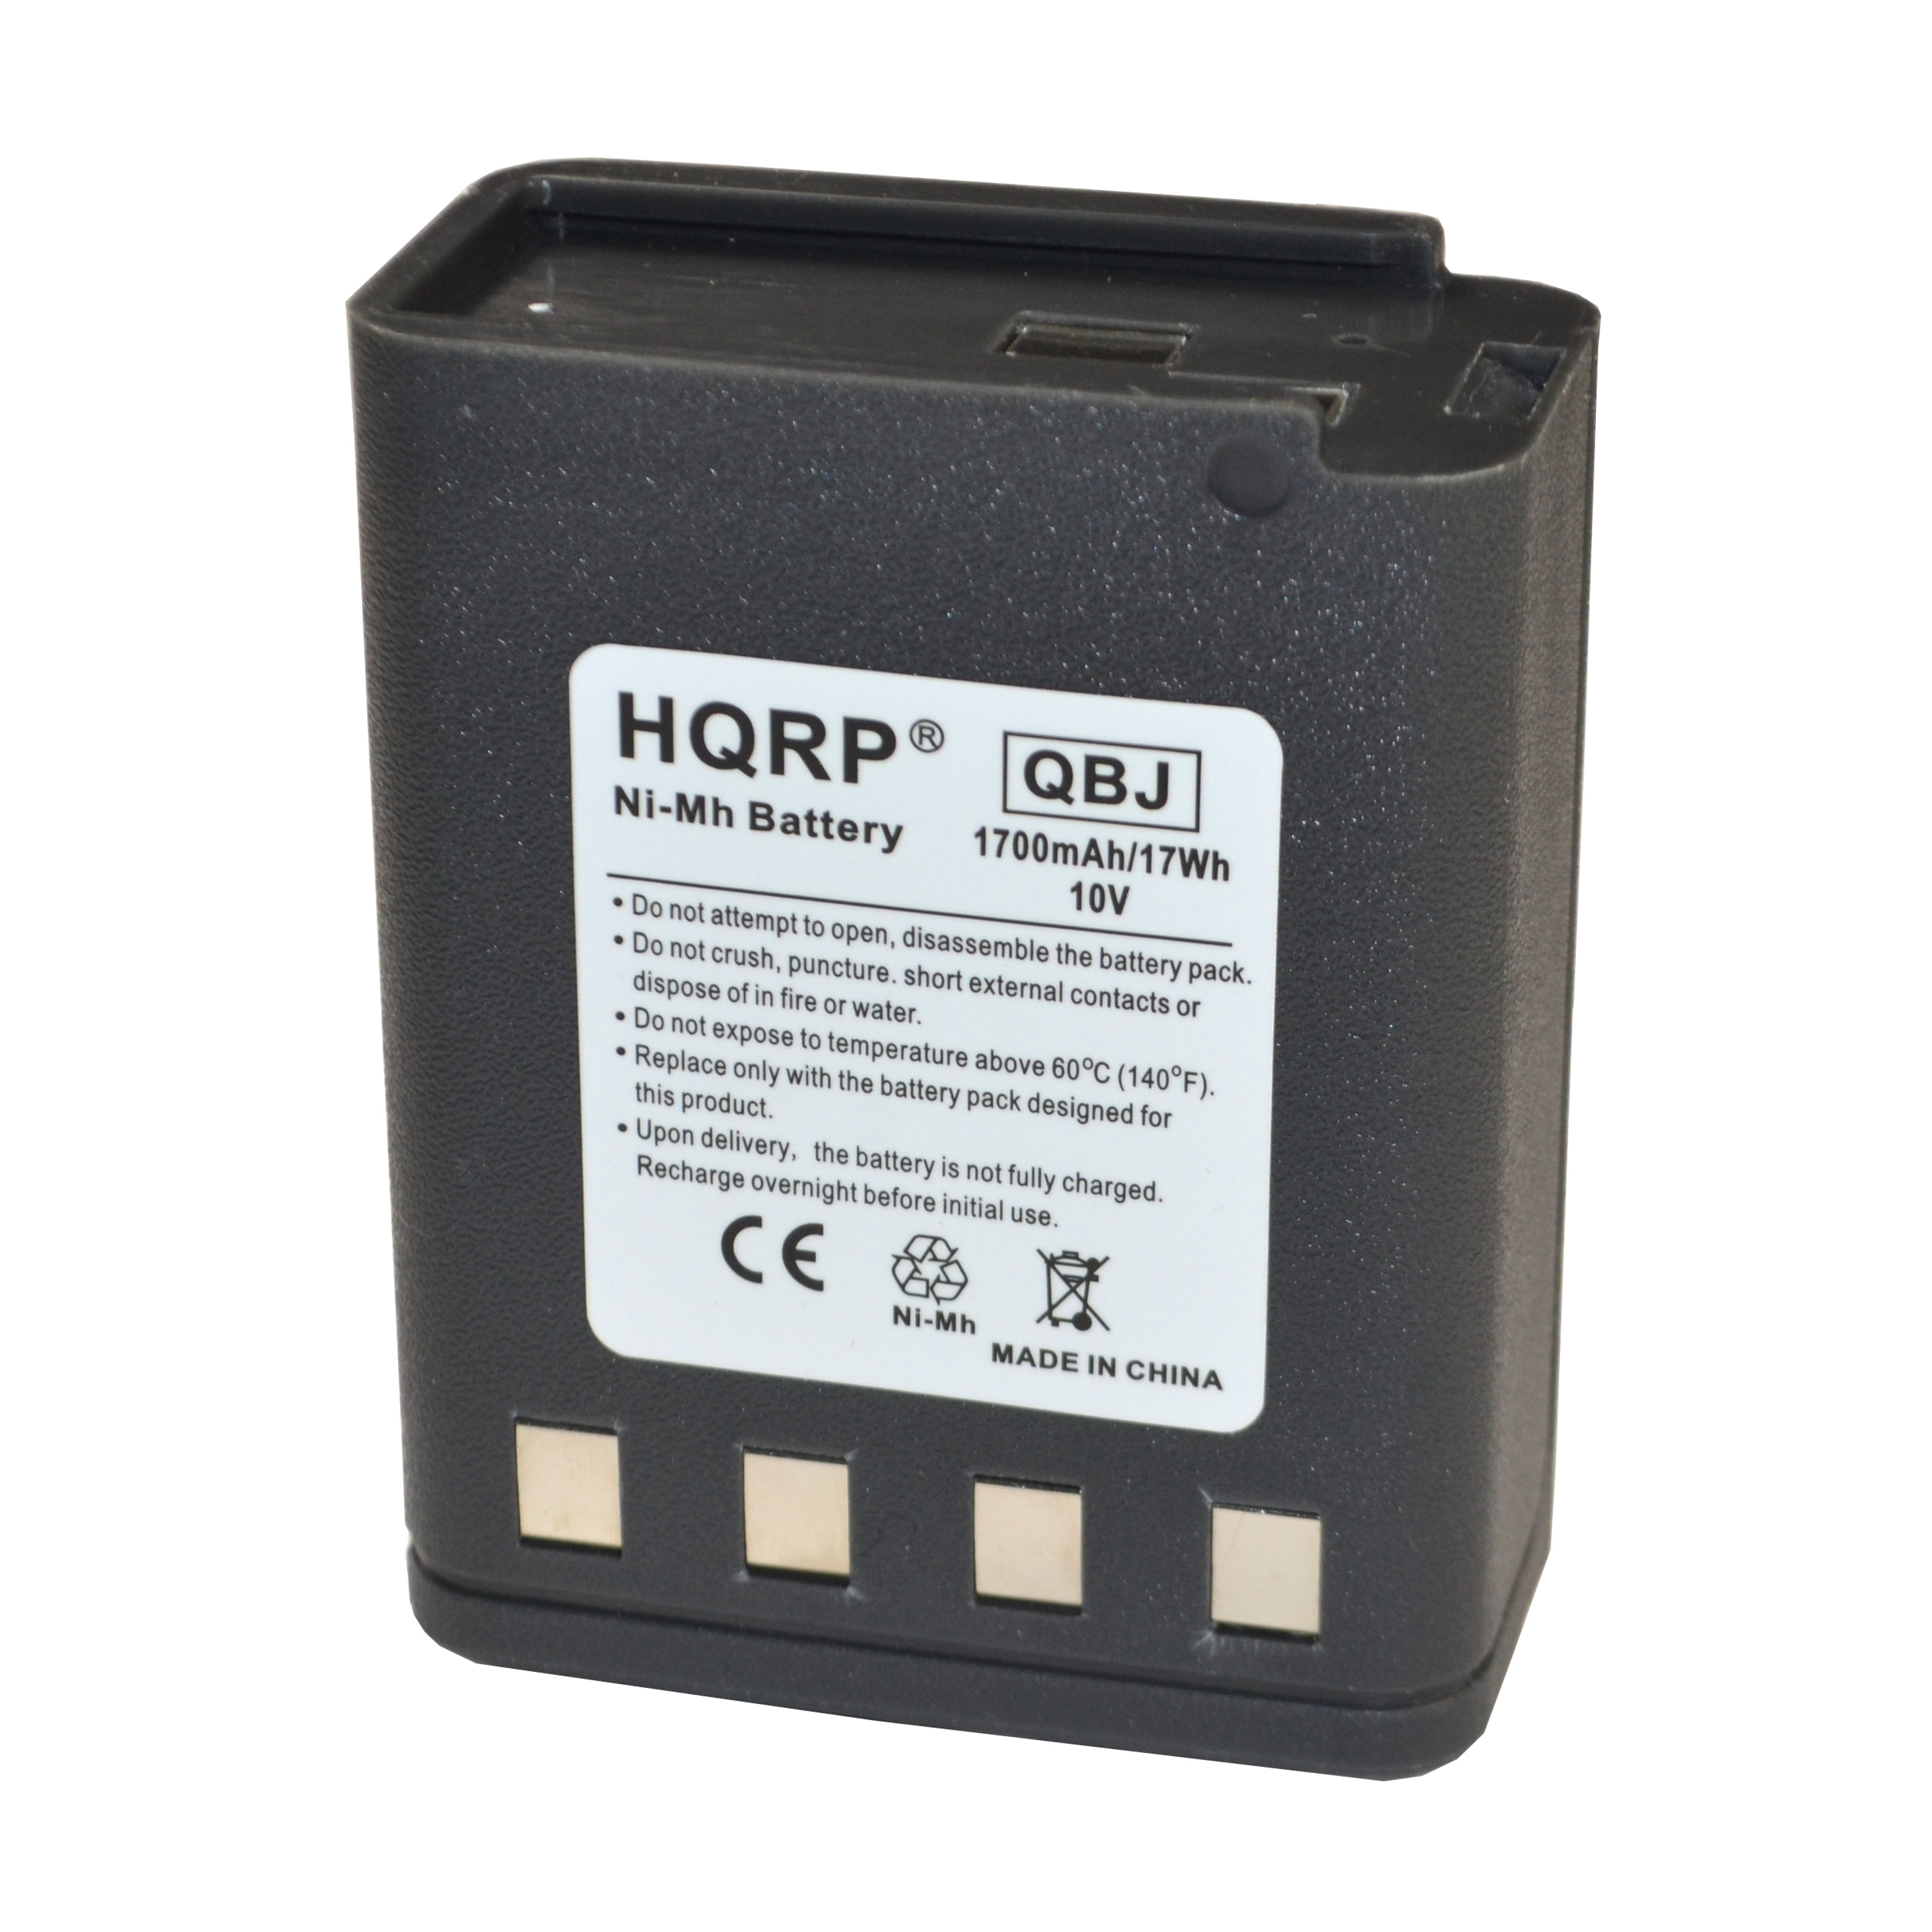 HQRP 1700mAh Battery for Motorola NTN5521B / NTN5531A / NTN5531B / NTN5048 / NTN5049 - image 3 of 6